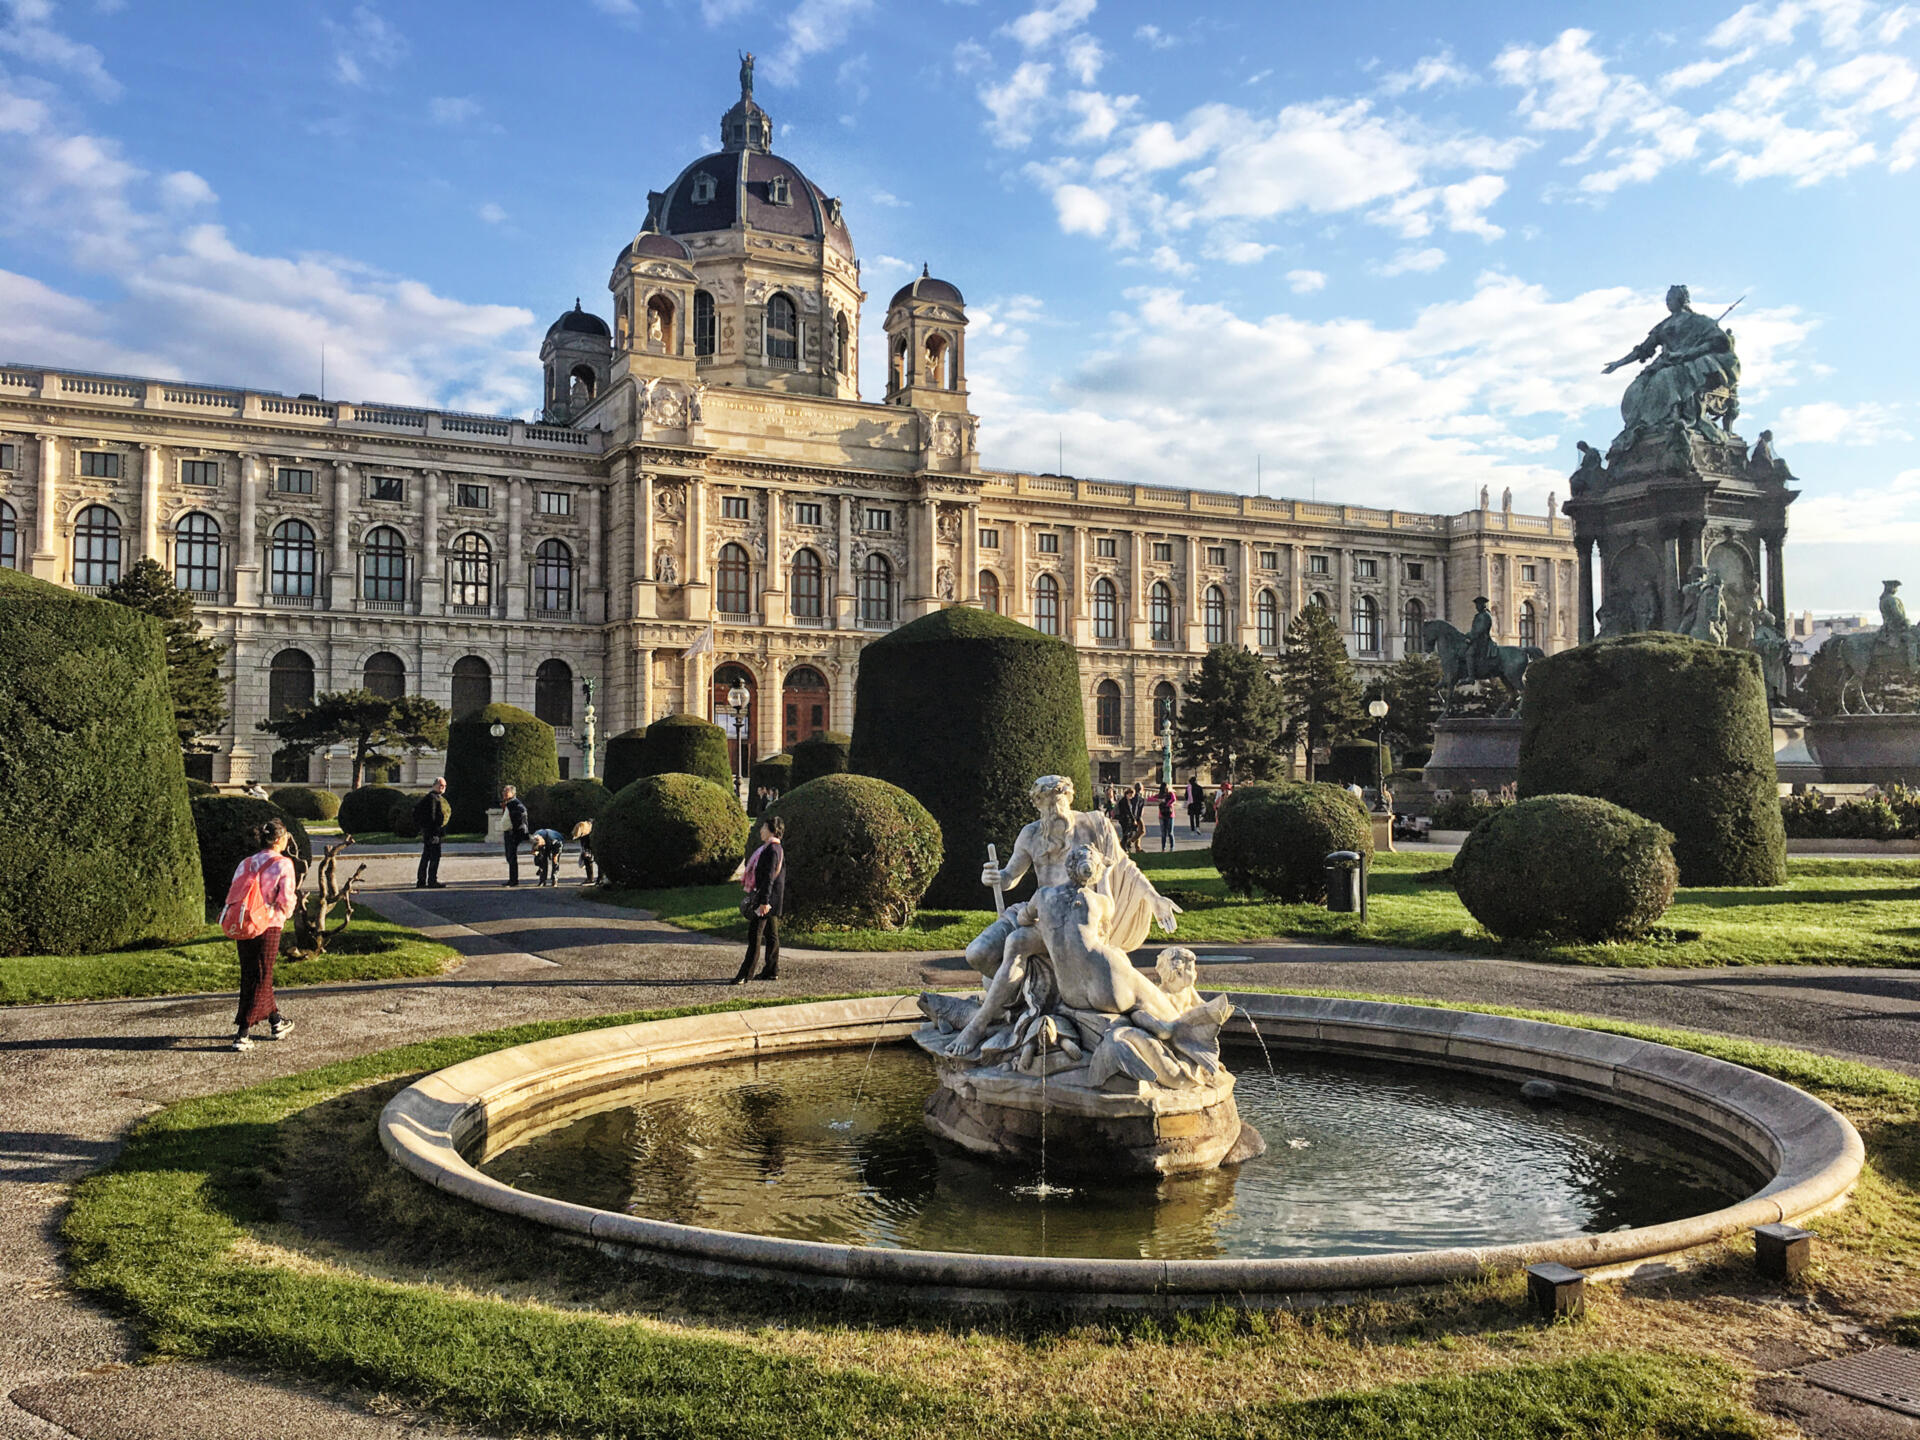 Seit jeher gilt Wien als eine der schönsten europäischen Hauptstädte. Zu allen Zeiten haben die Wiener und ihre Herrscher ihre Liebe zur Kunst und Kultur durch architektonische Schönheit und stilvolles Gepräge dokumentiert.